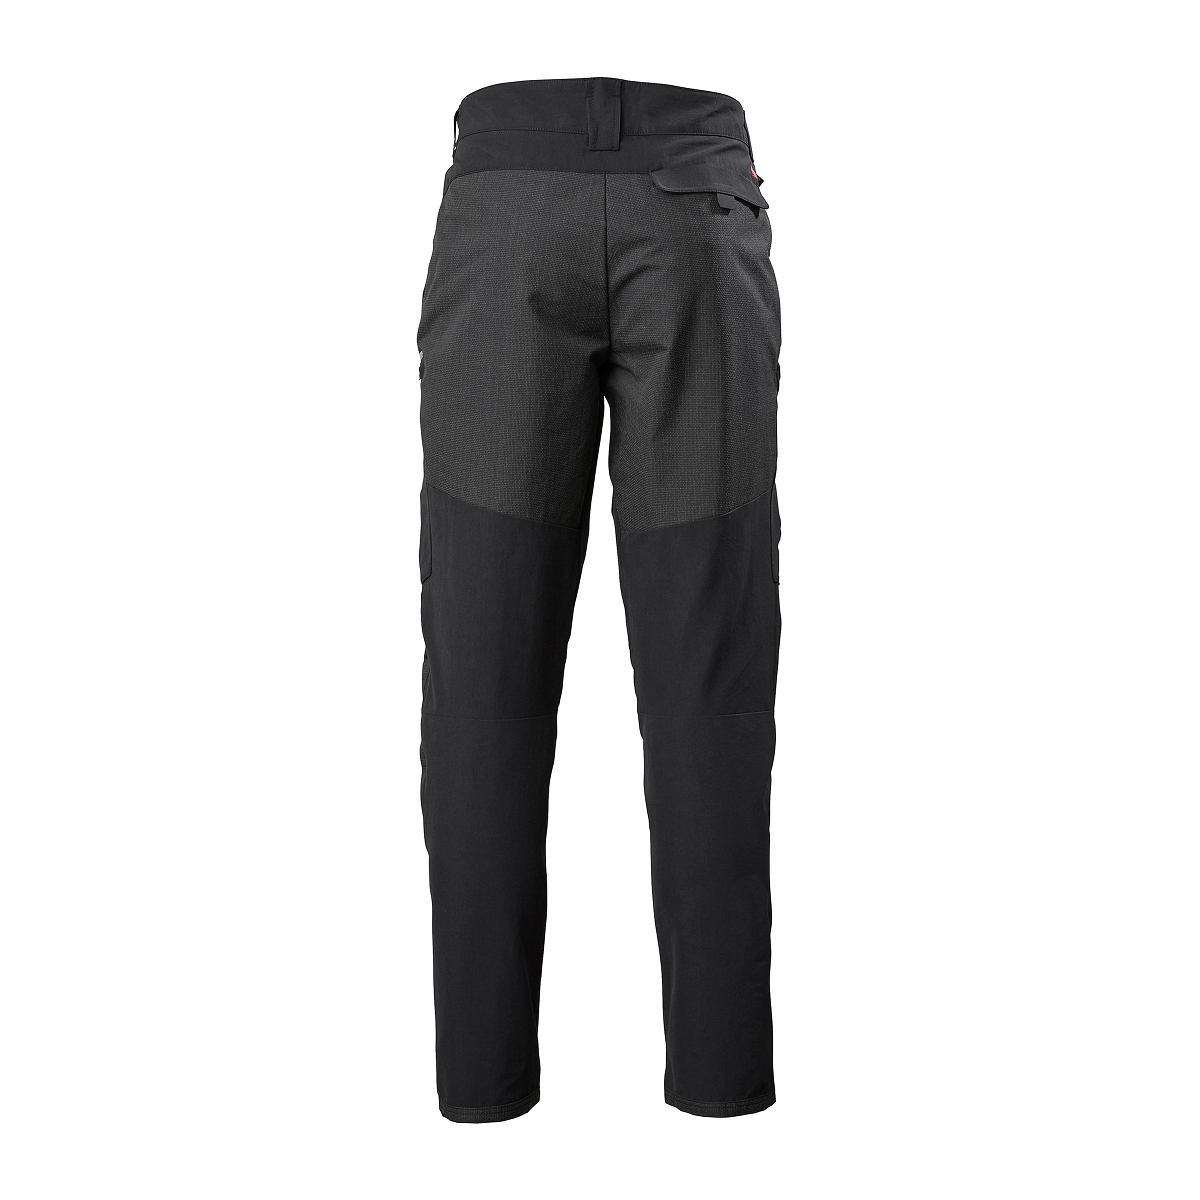 Musto Evolution Performance pantalon de voile 2.0 homme noir, taille 34